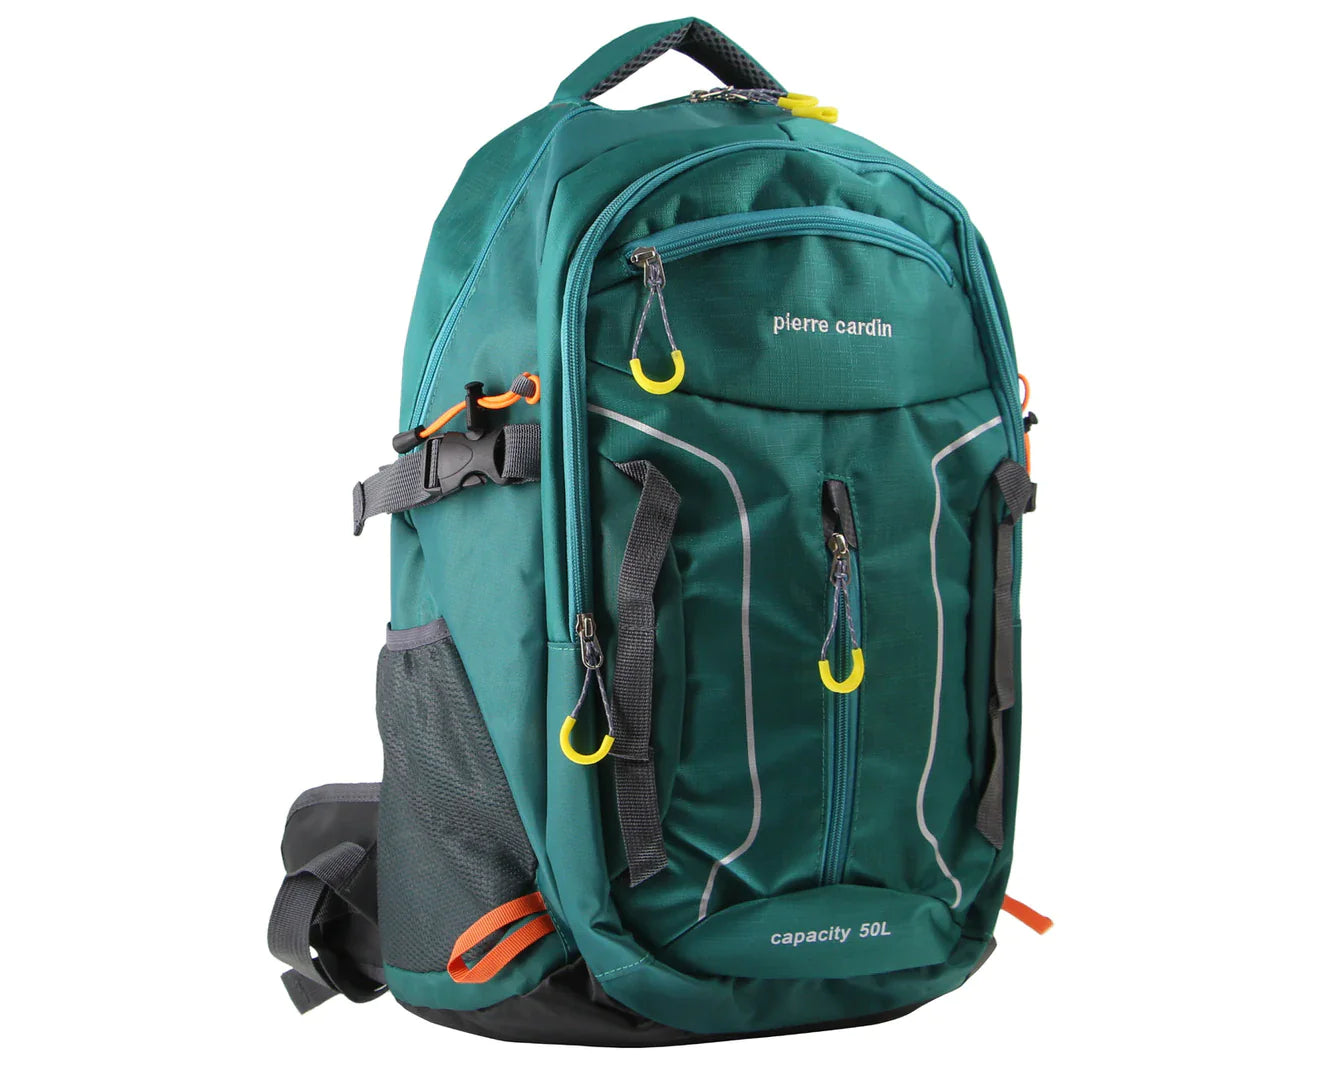 Pierre Cardin Adventure Backpack - Green - 50L